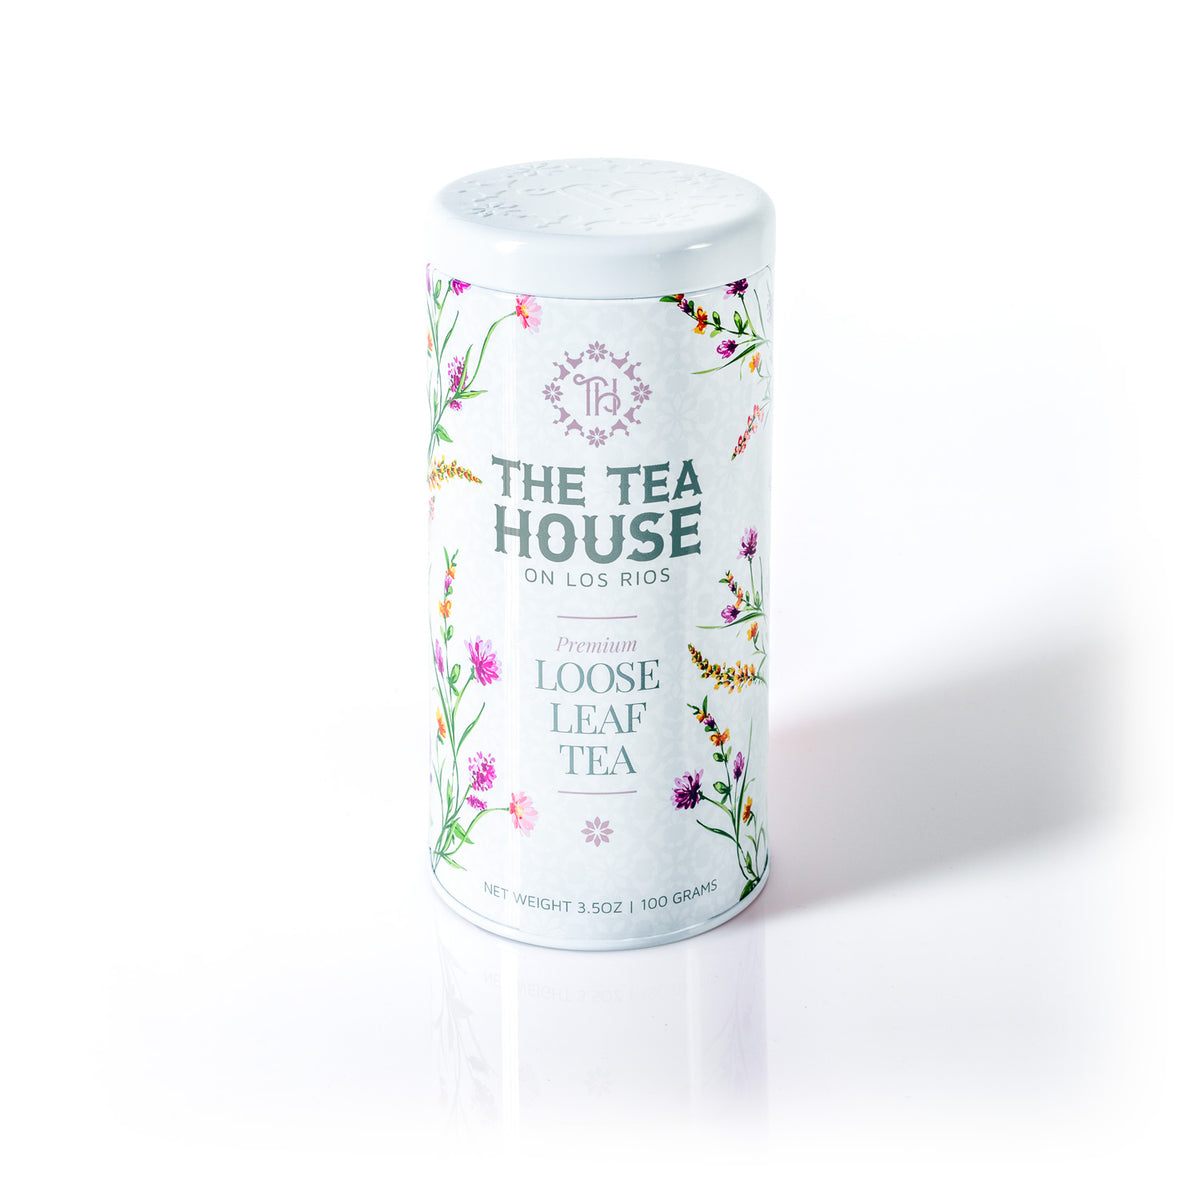 100g Tea Tin by The Tea House on Los Rios